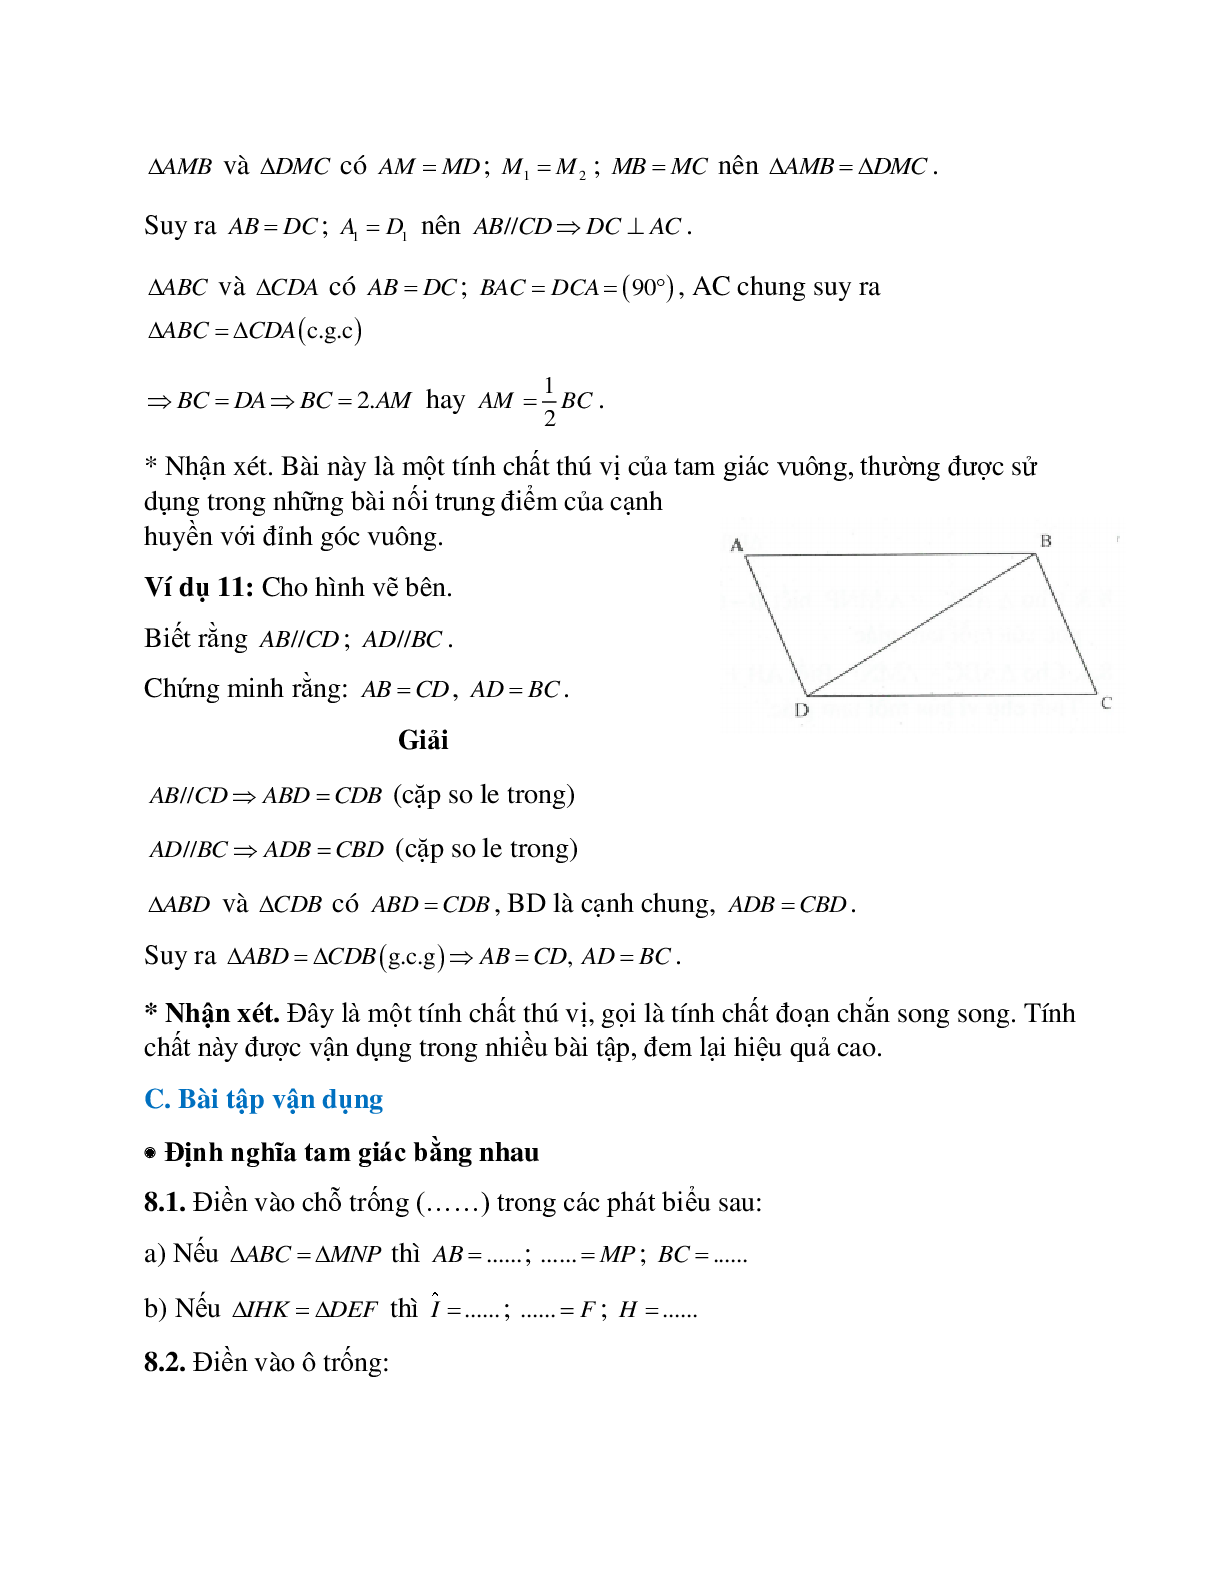 Tuyển tập những bài tập hay gặp về Hai tam giác bằng nhau hình học lớp 7 có lời giải (trang 10)